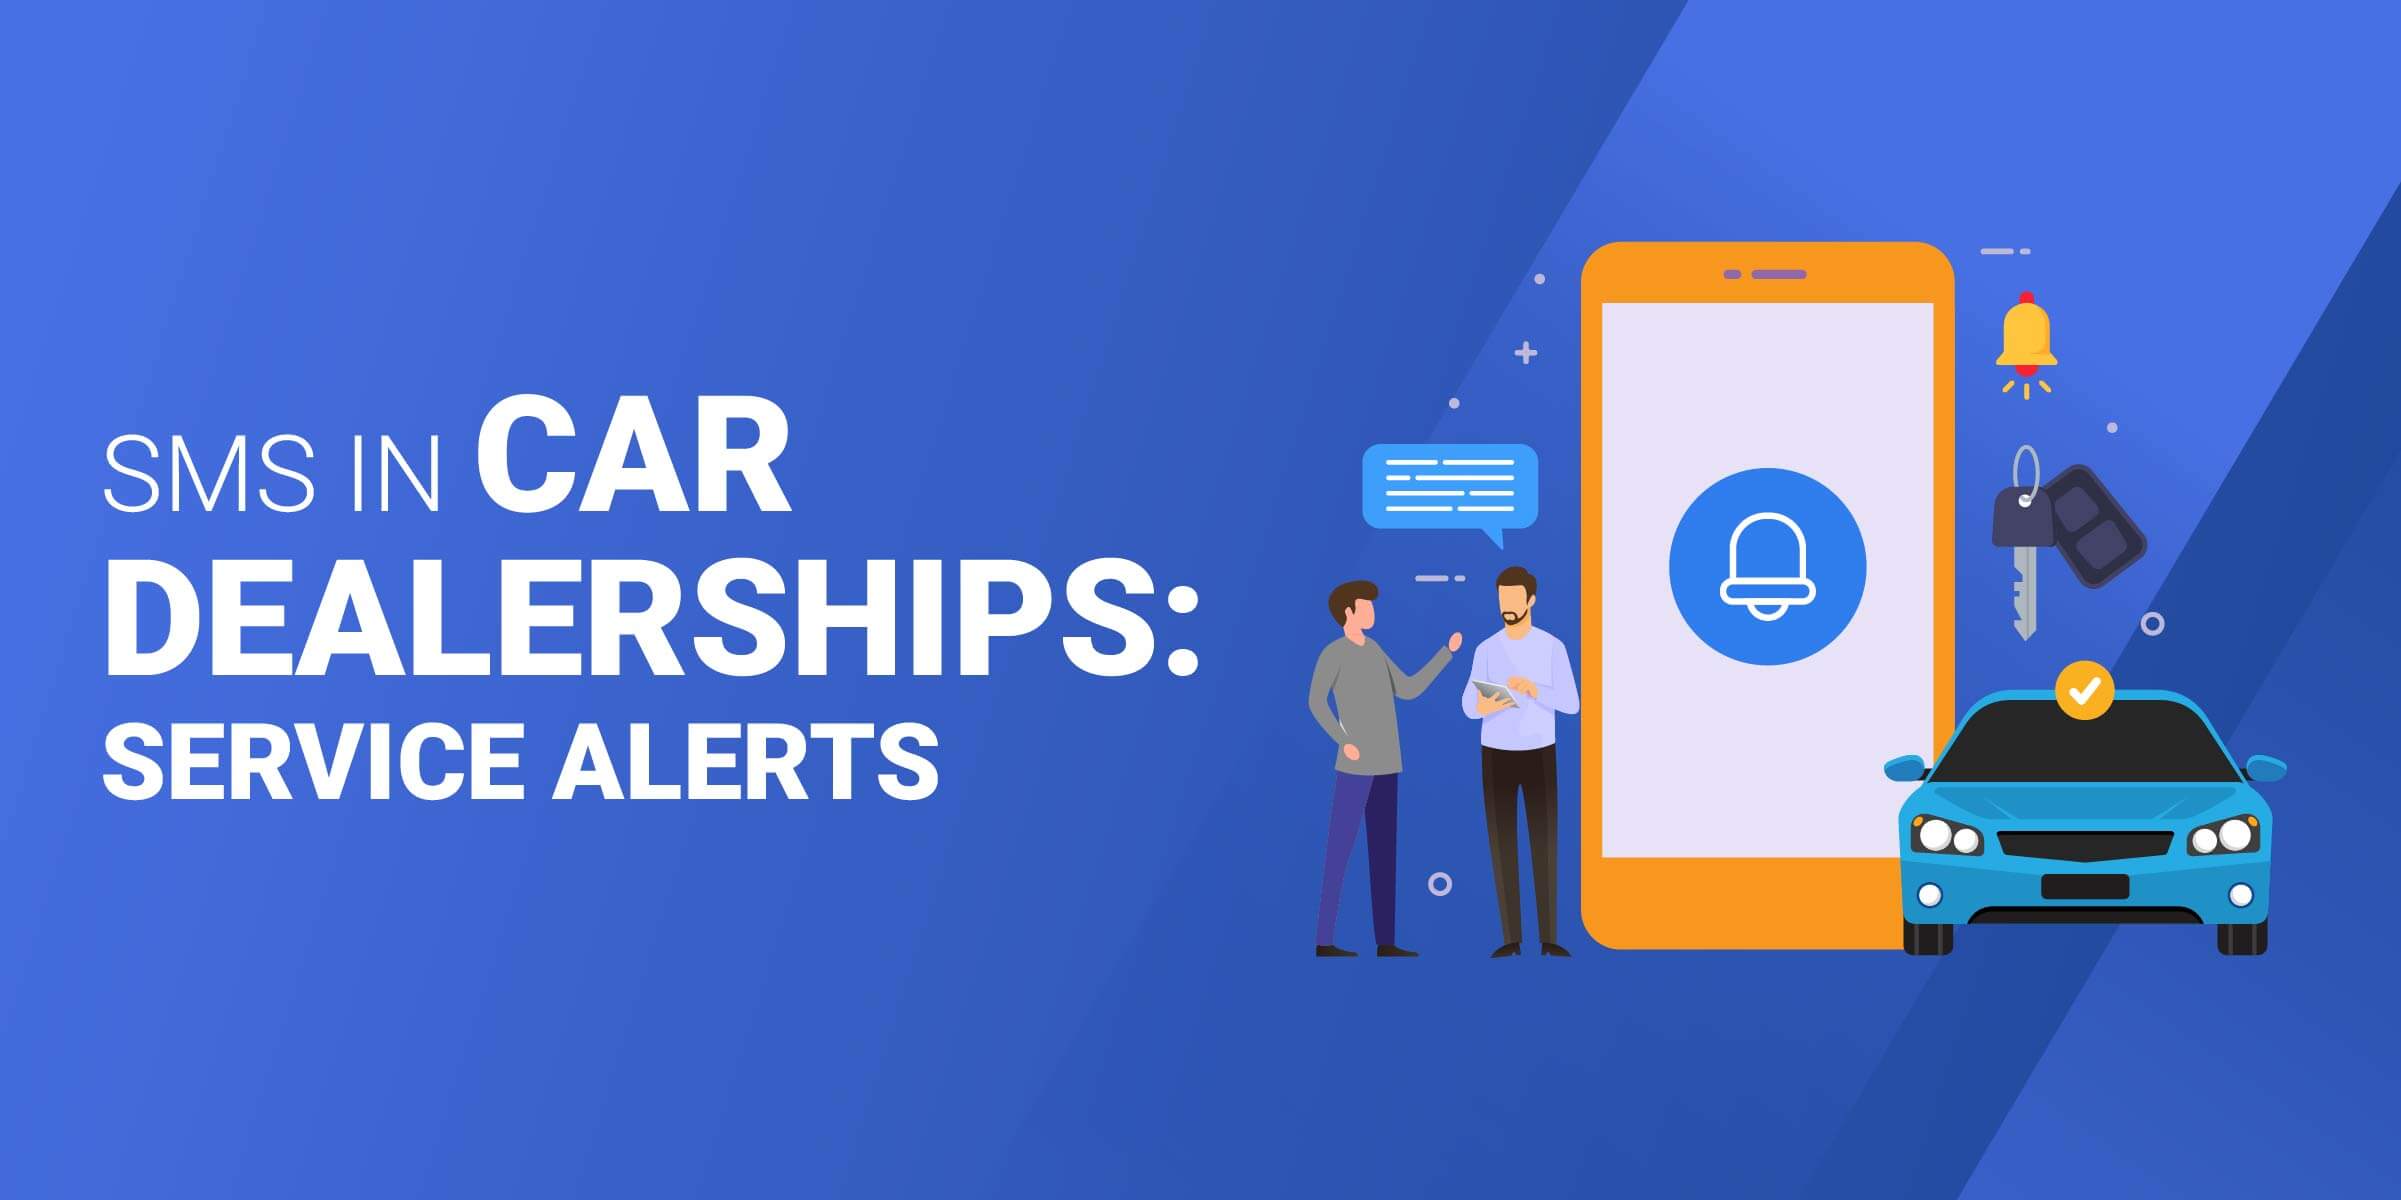 SMS in Car Dealerships Service Alerts